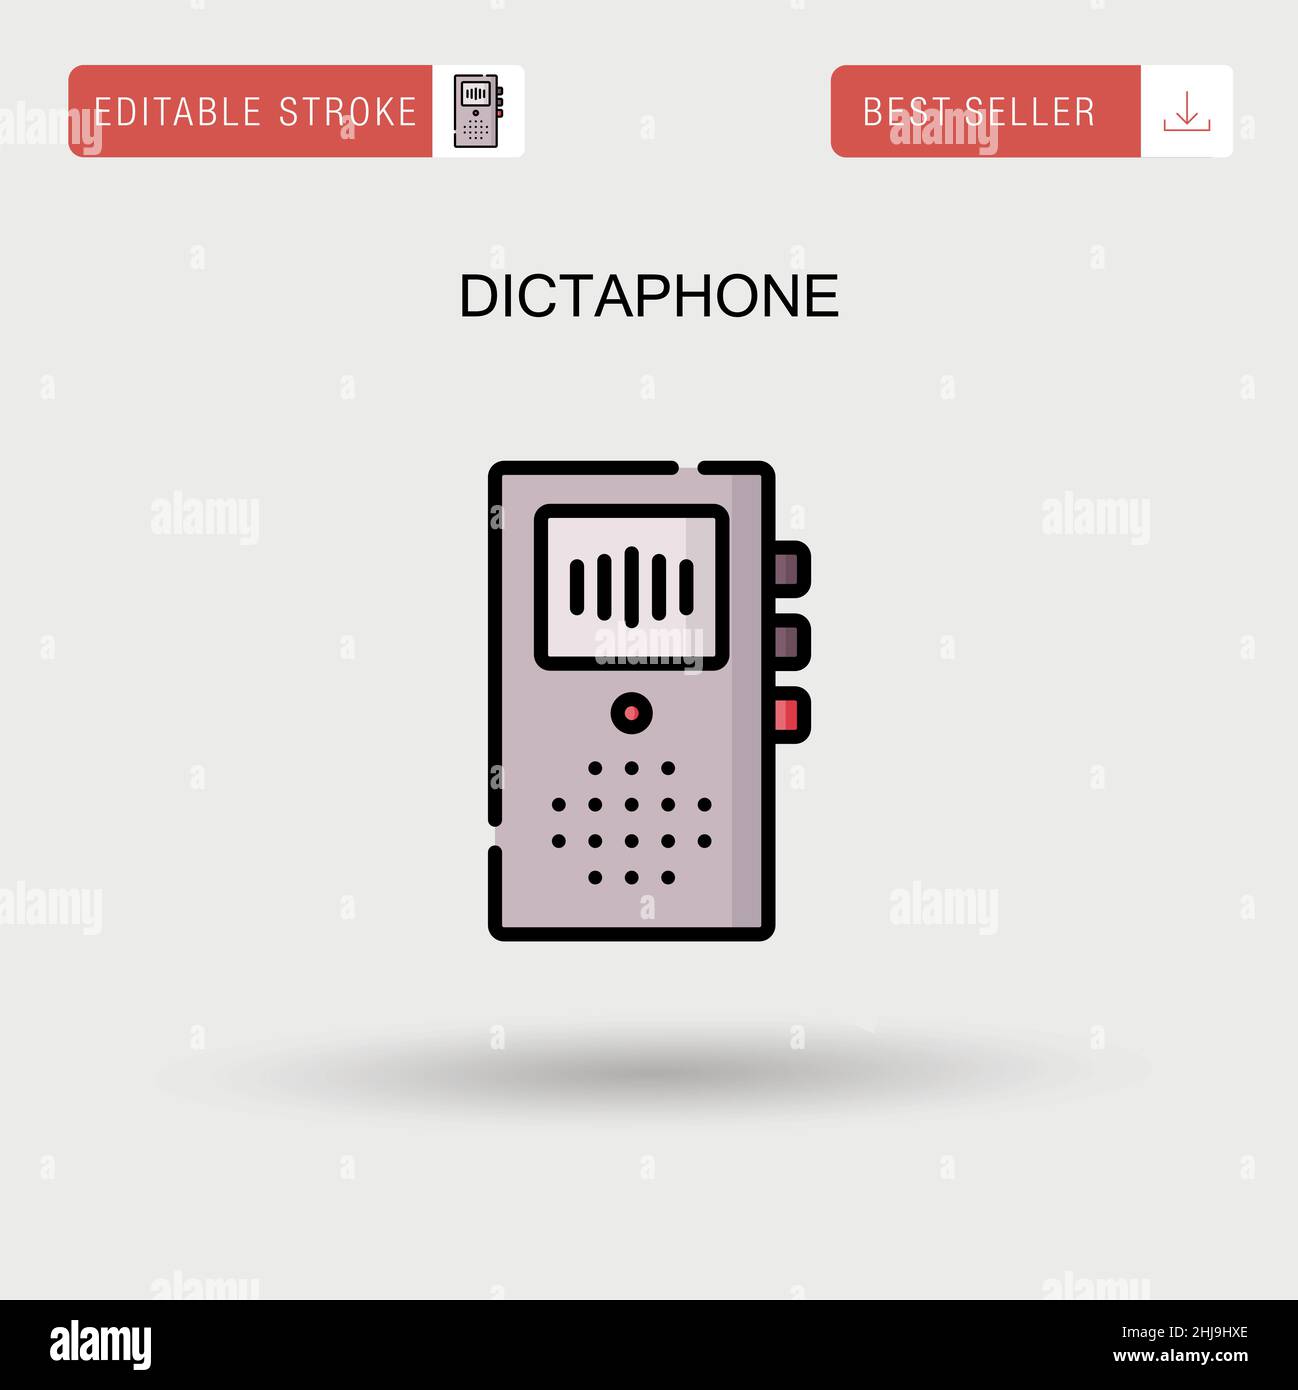 Dictaphone Banque d'images vectorielles - Alamy